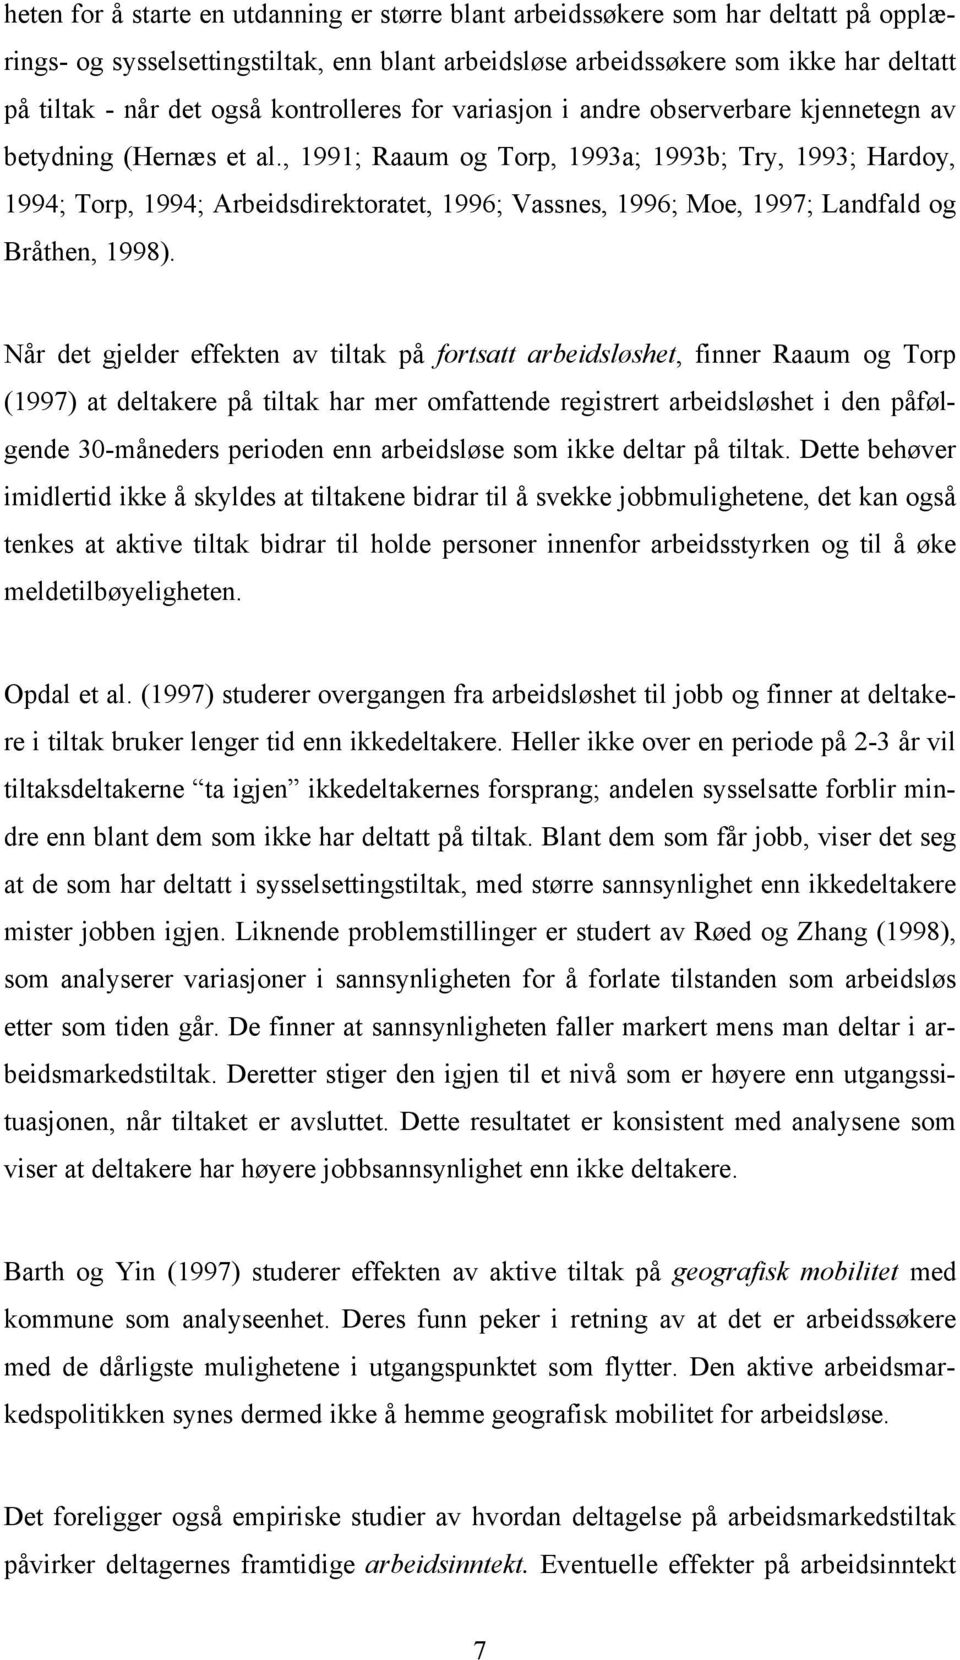 , 1991; Raaum og Torp, 1993a; 1993b; Try, 1993; Hardoy, 1994; Torp, 1994; Arbeidsdirektoratet, 1996; Vassnes, 1996; Moe, 1997; Landfald og Bråthen, 1998).